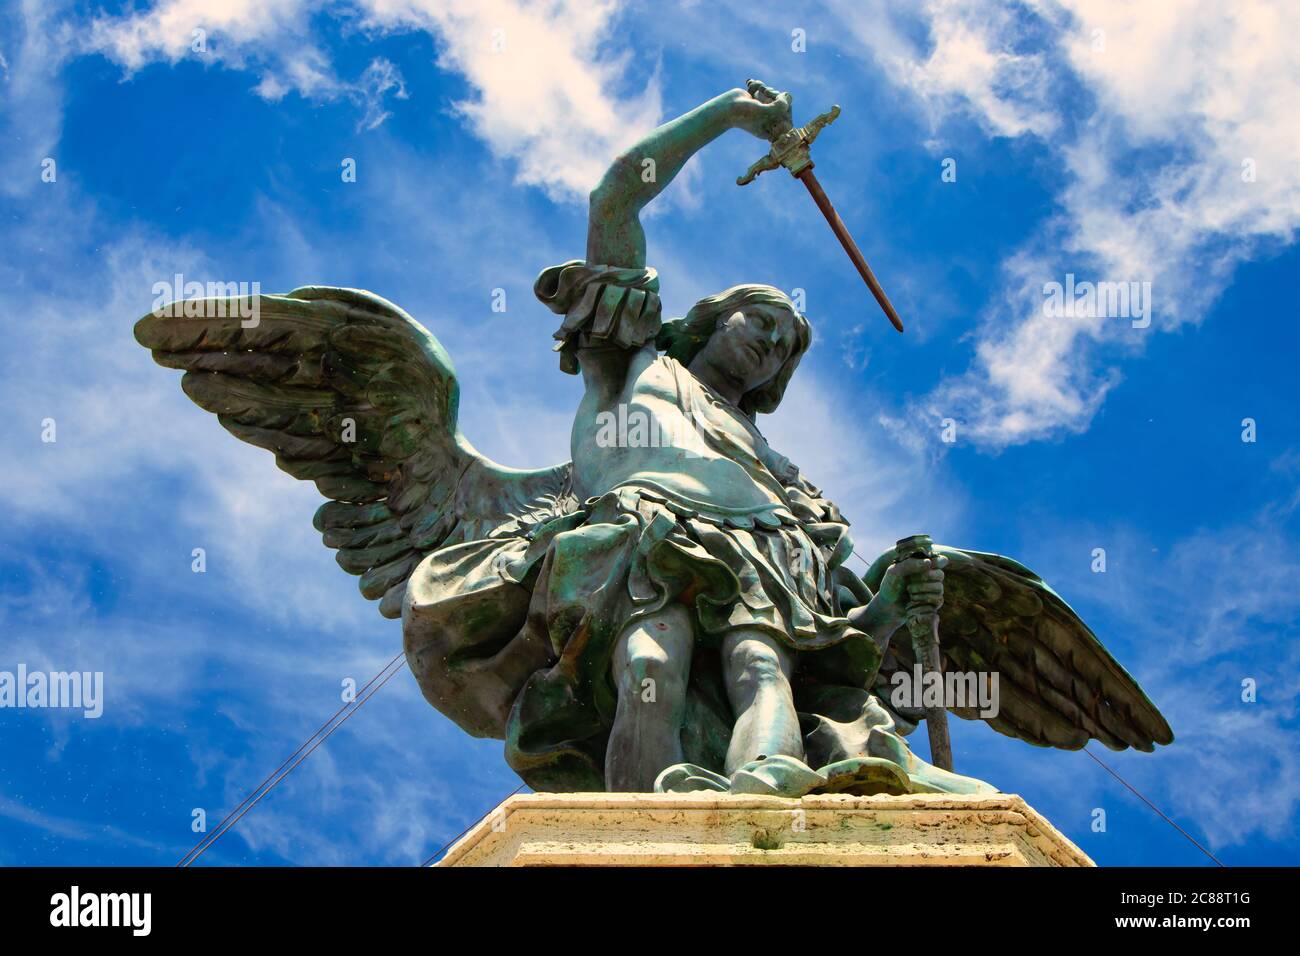 Roma, Italia - 30 aprile 2019 - statua in bronzo di Michele Arcangelo, in cima a Castel Sant'Angelo, modellata nel 1753 da Peter Anton von Foto Stock